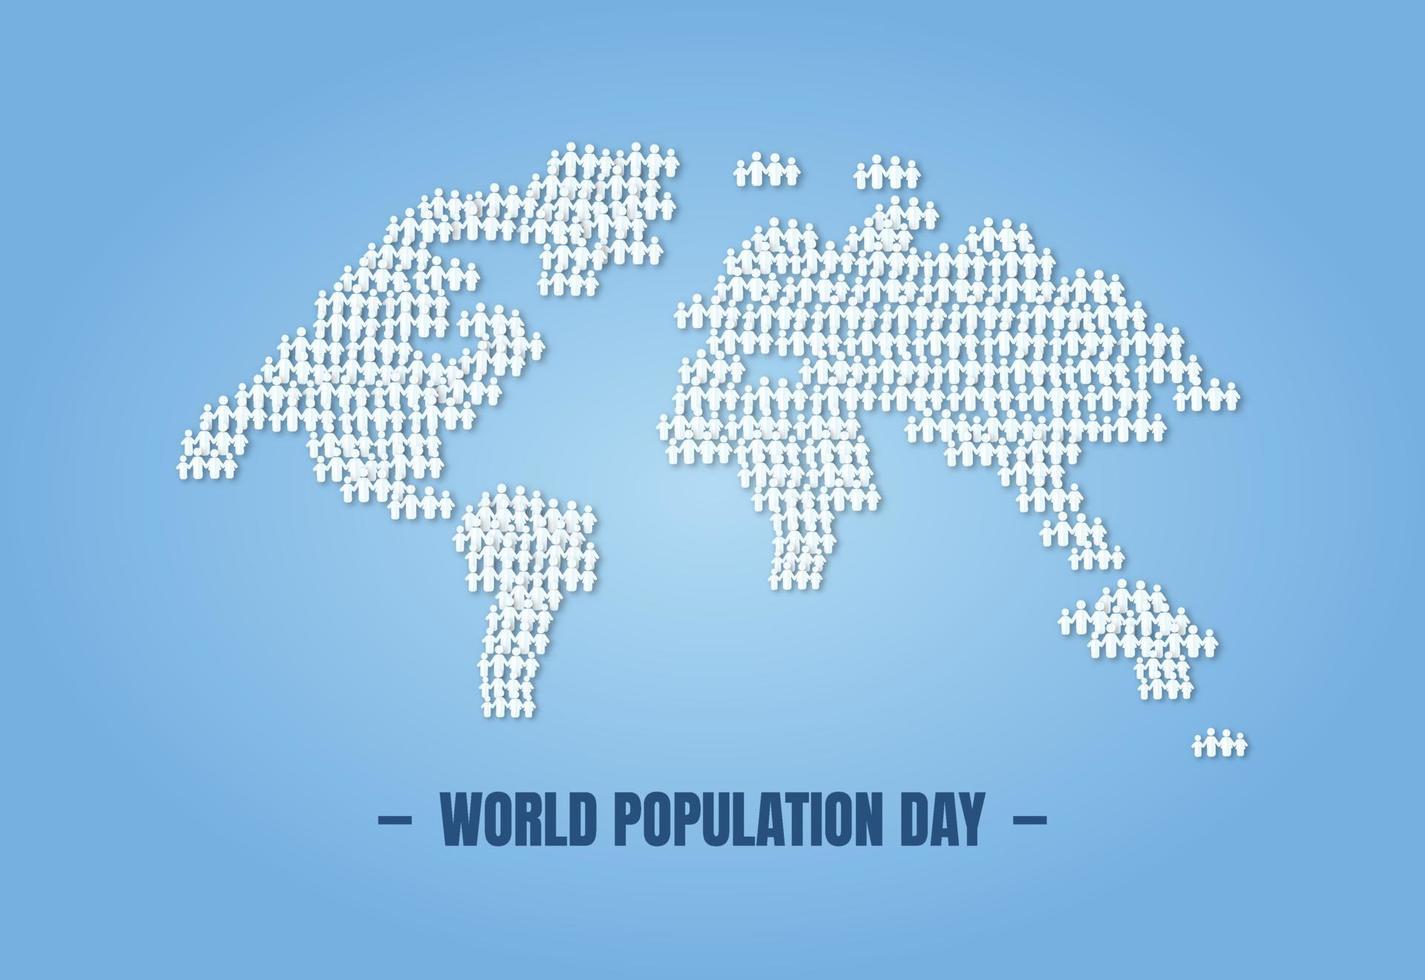 Welt Population Tag Design. Erde und Völker Illustration vektor